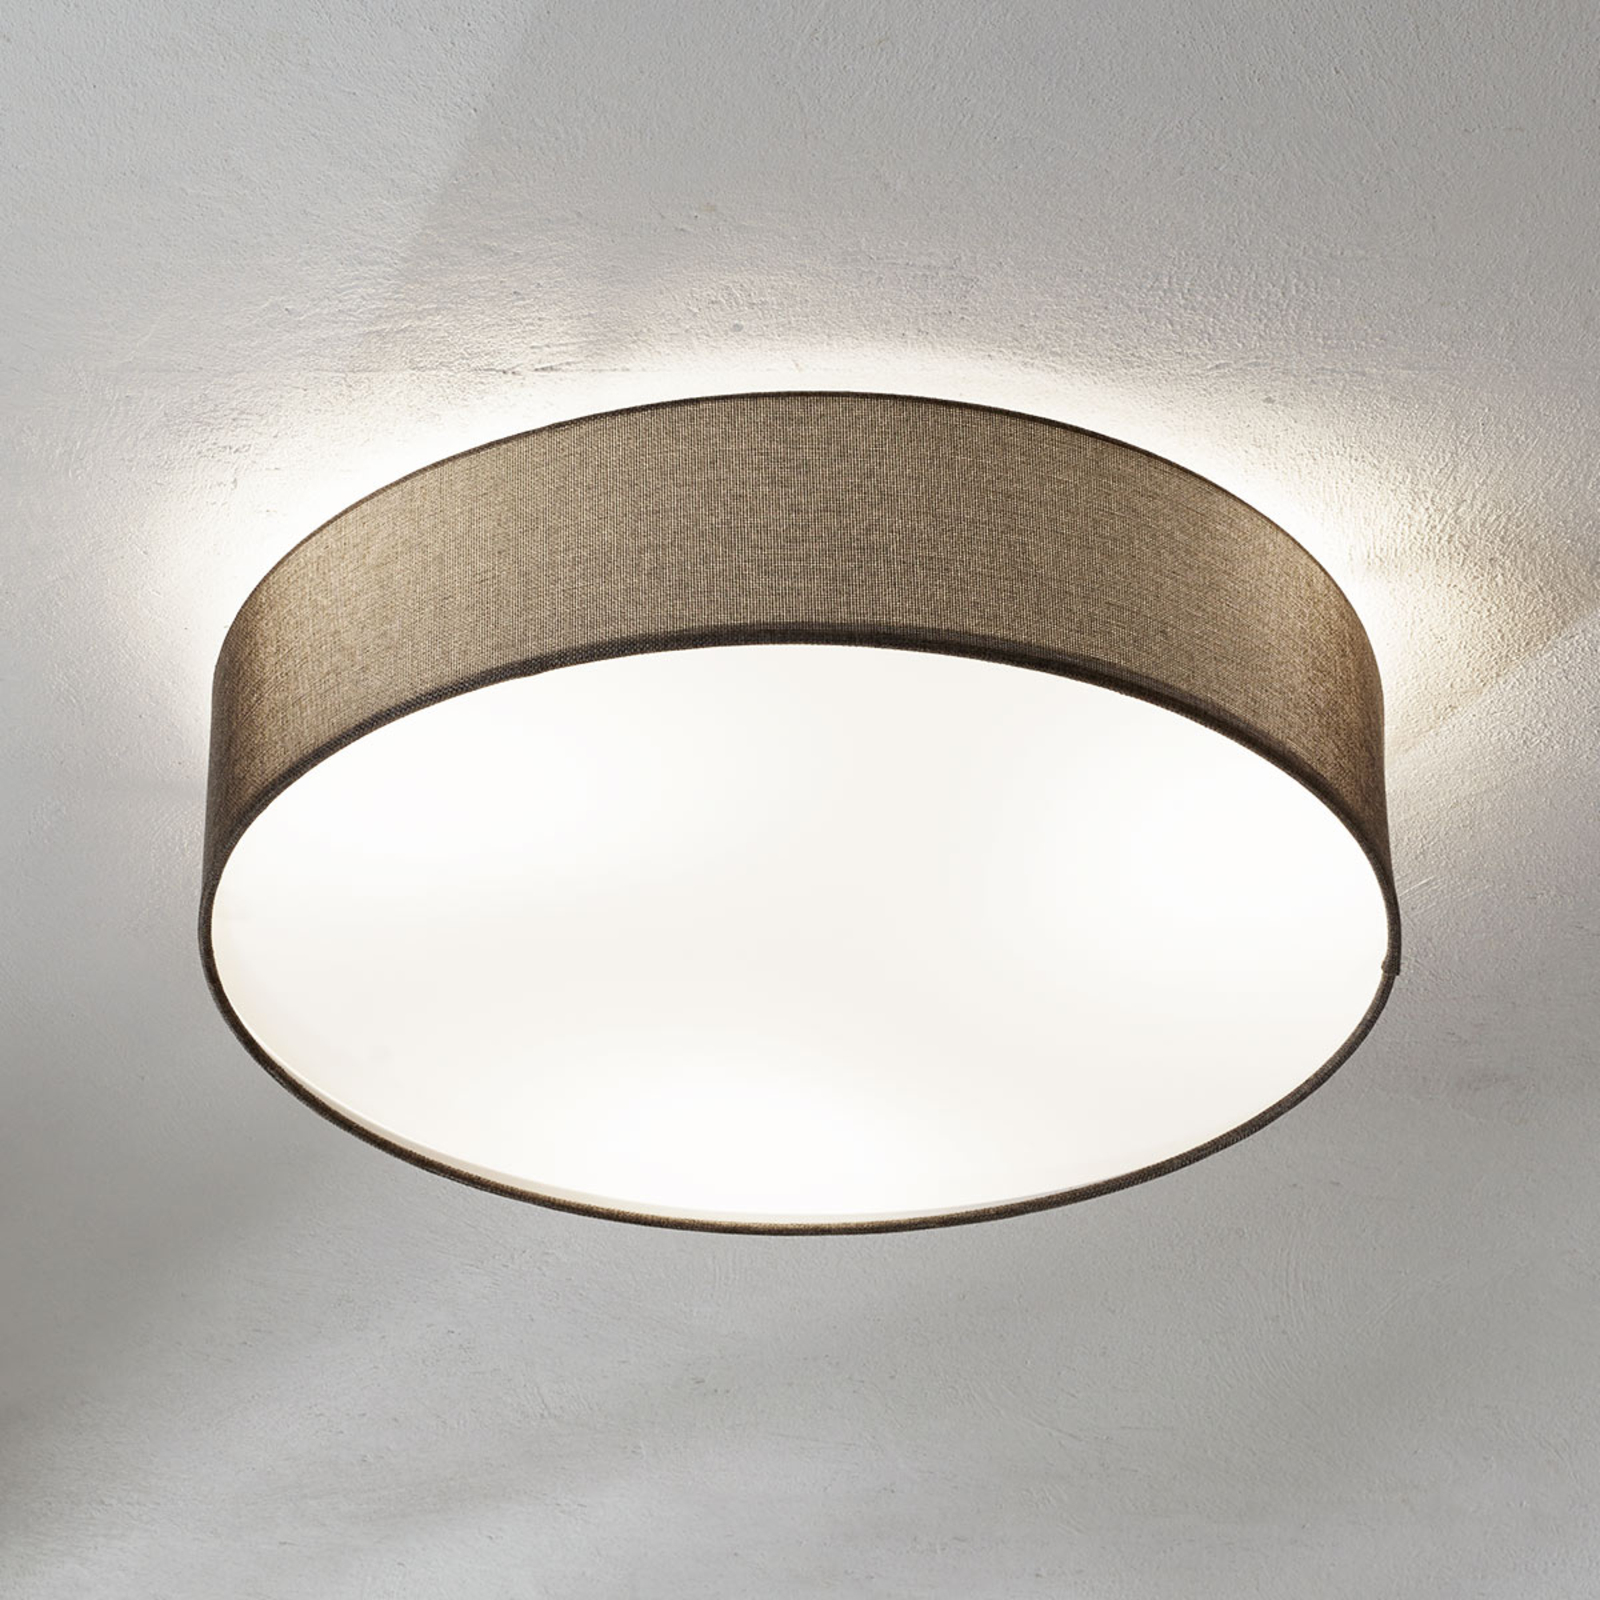 Bruine plafondlamp Pasteri | Lampen24.be